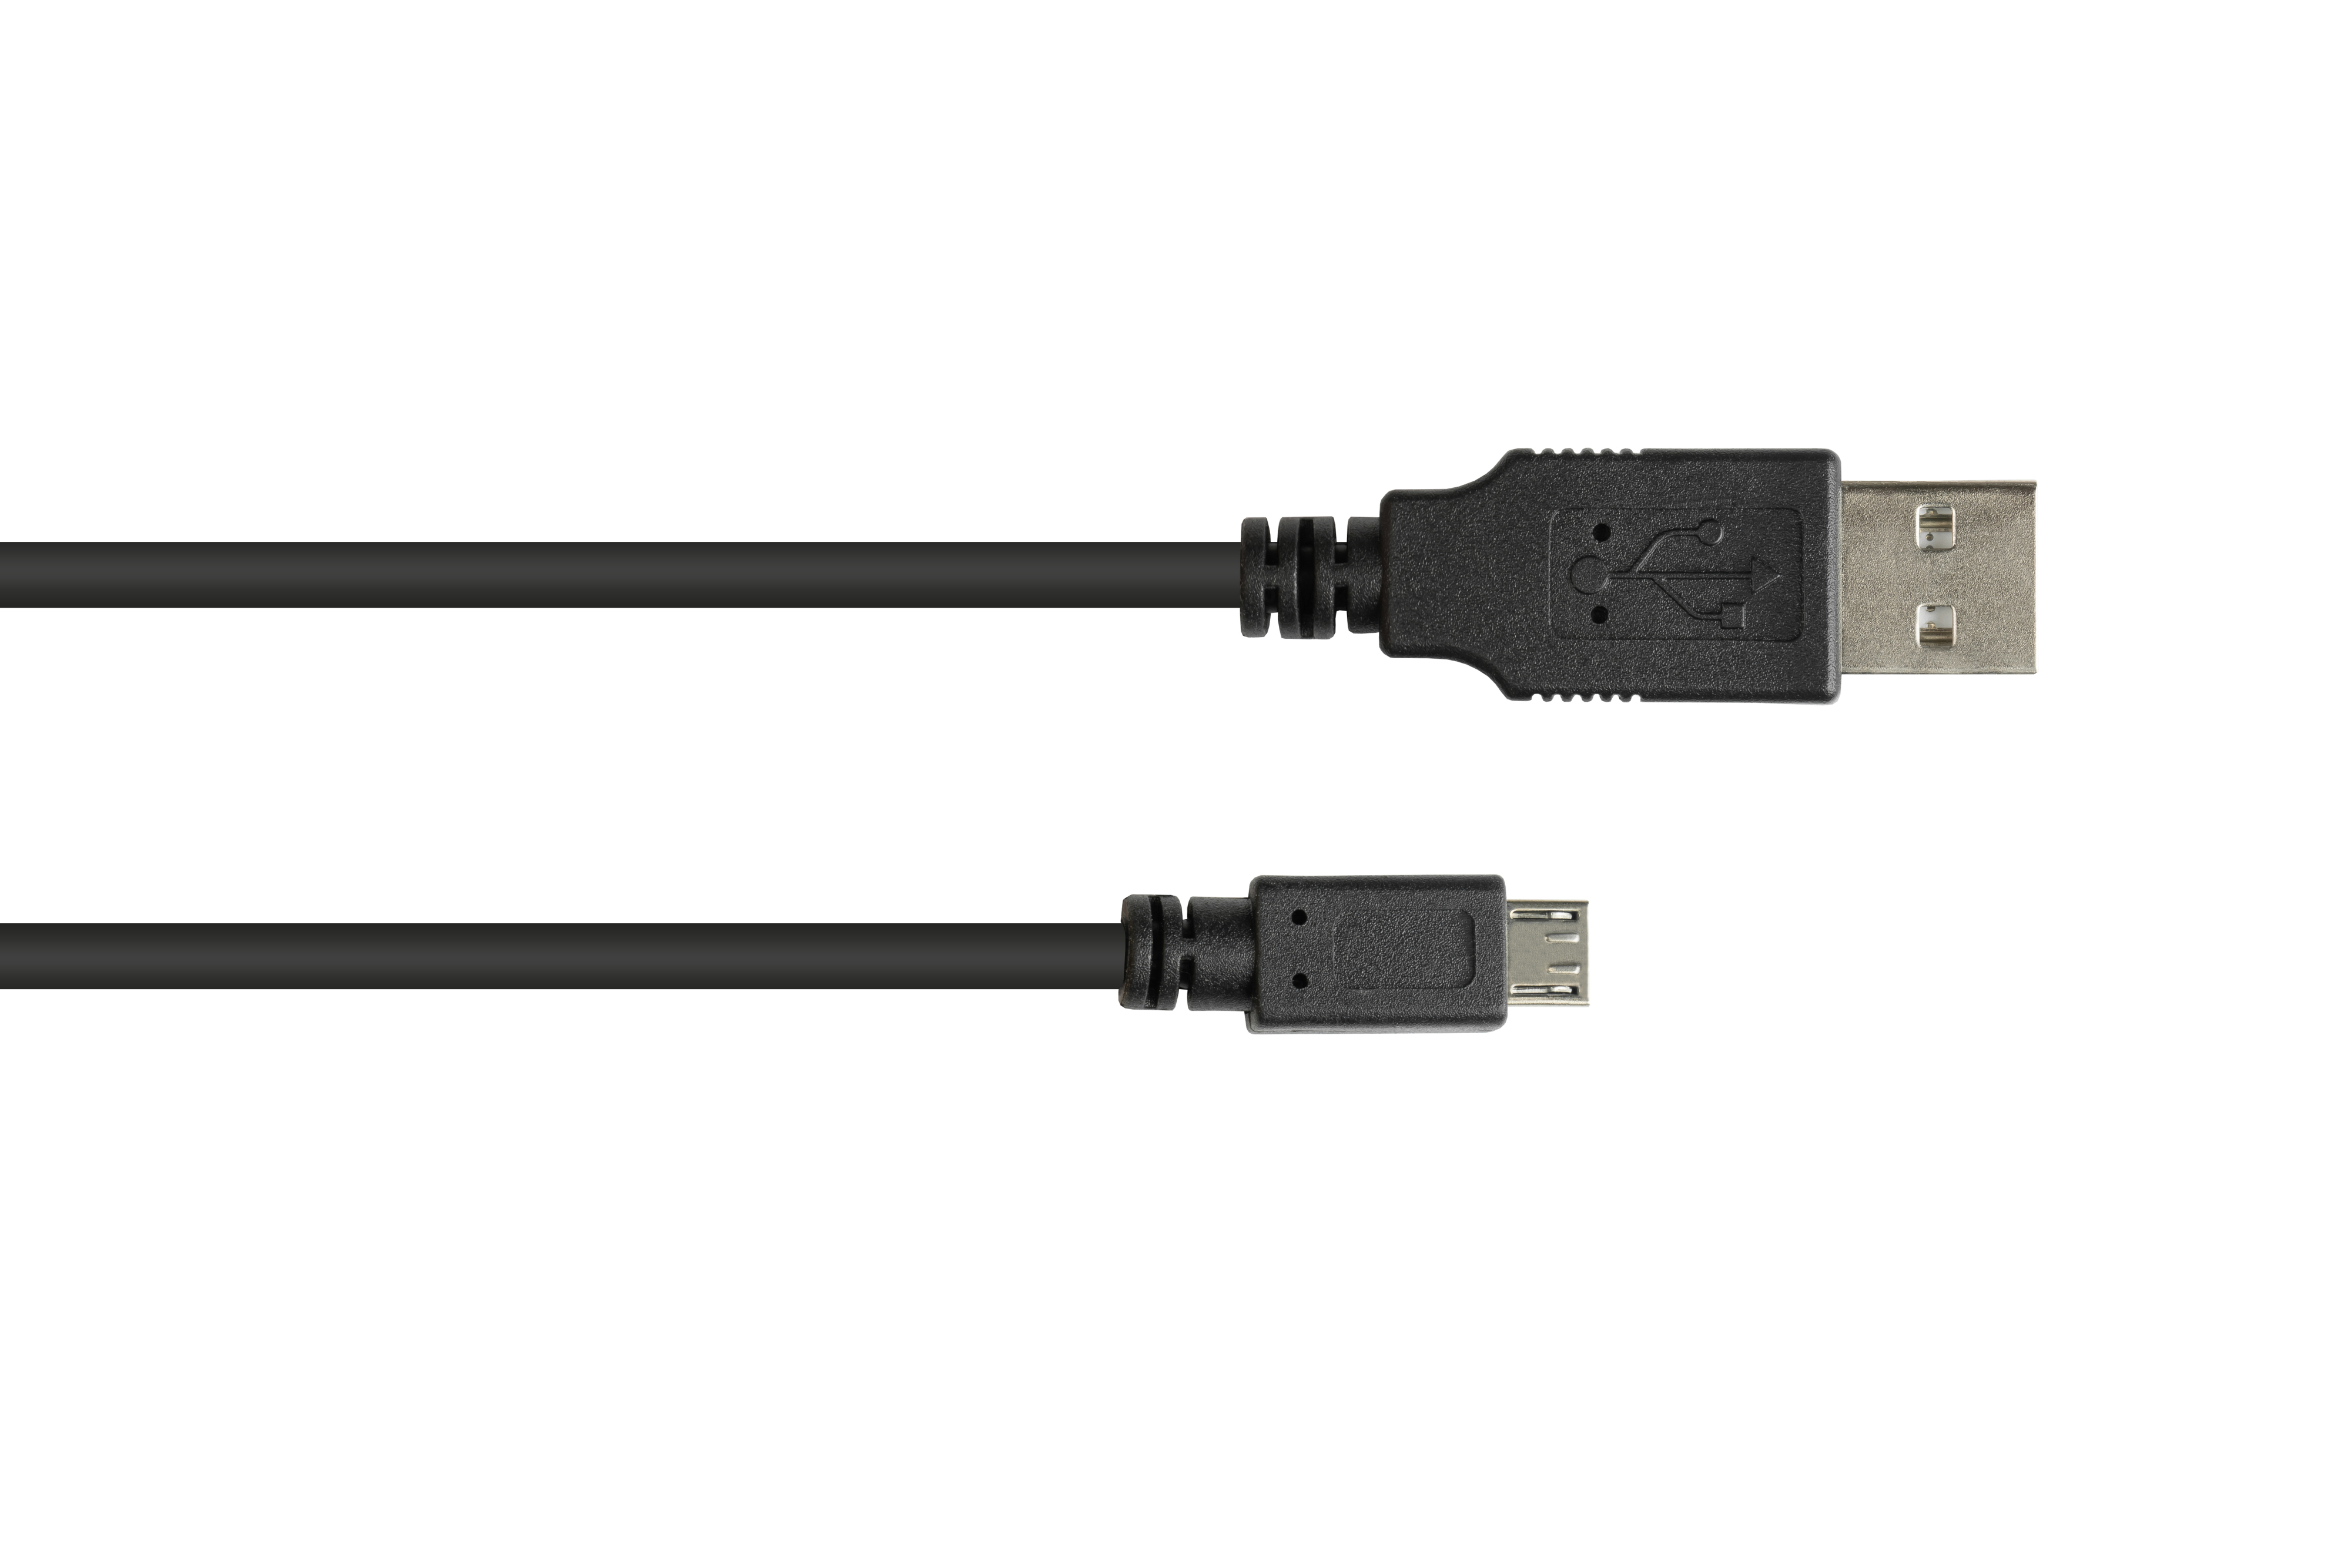 schwarz A B, Stecker CONNECTIONS Stecker 2.0 Micro an Anschlusskabel USB GOOD EASY